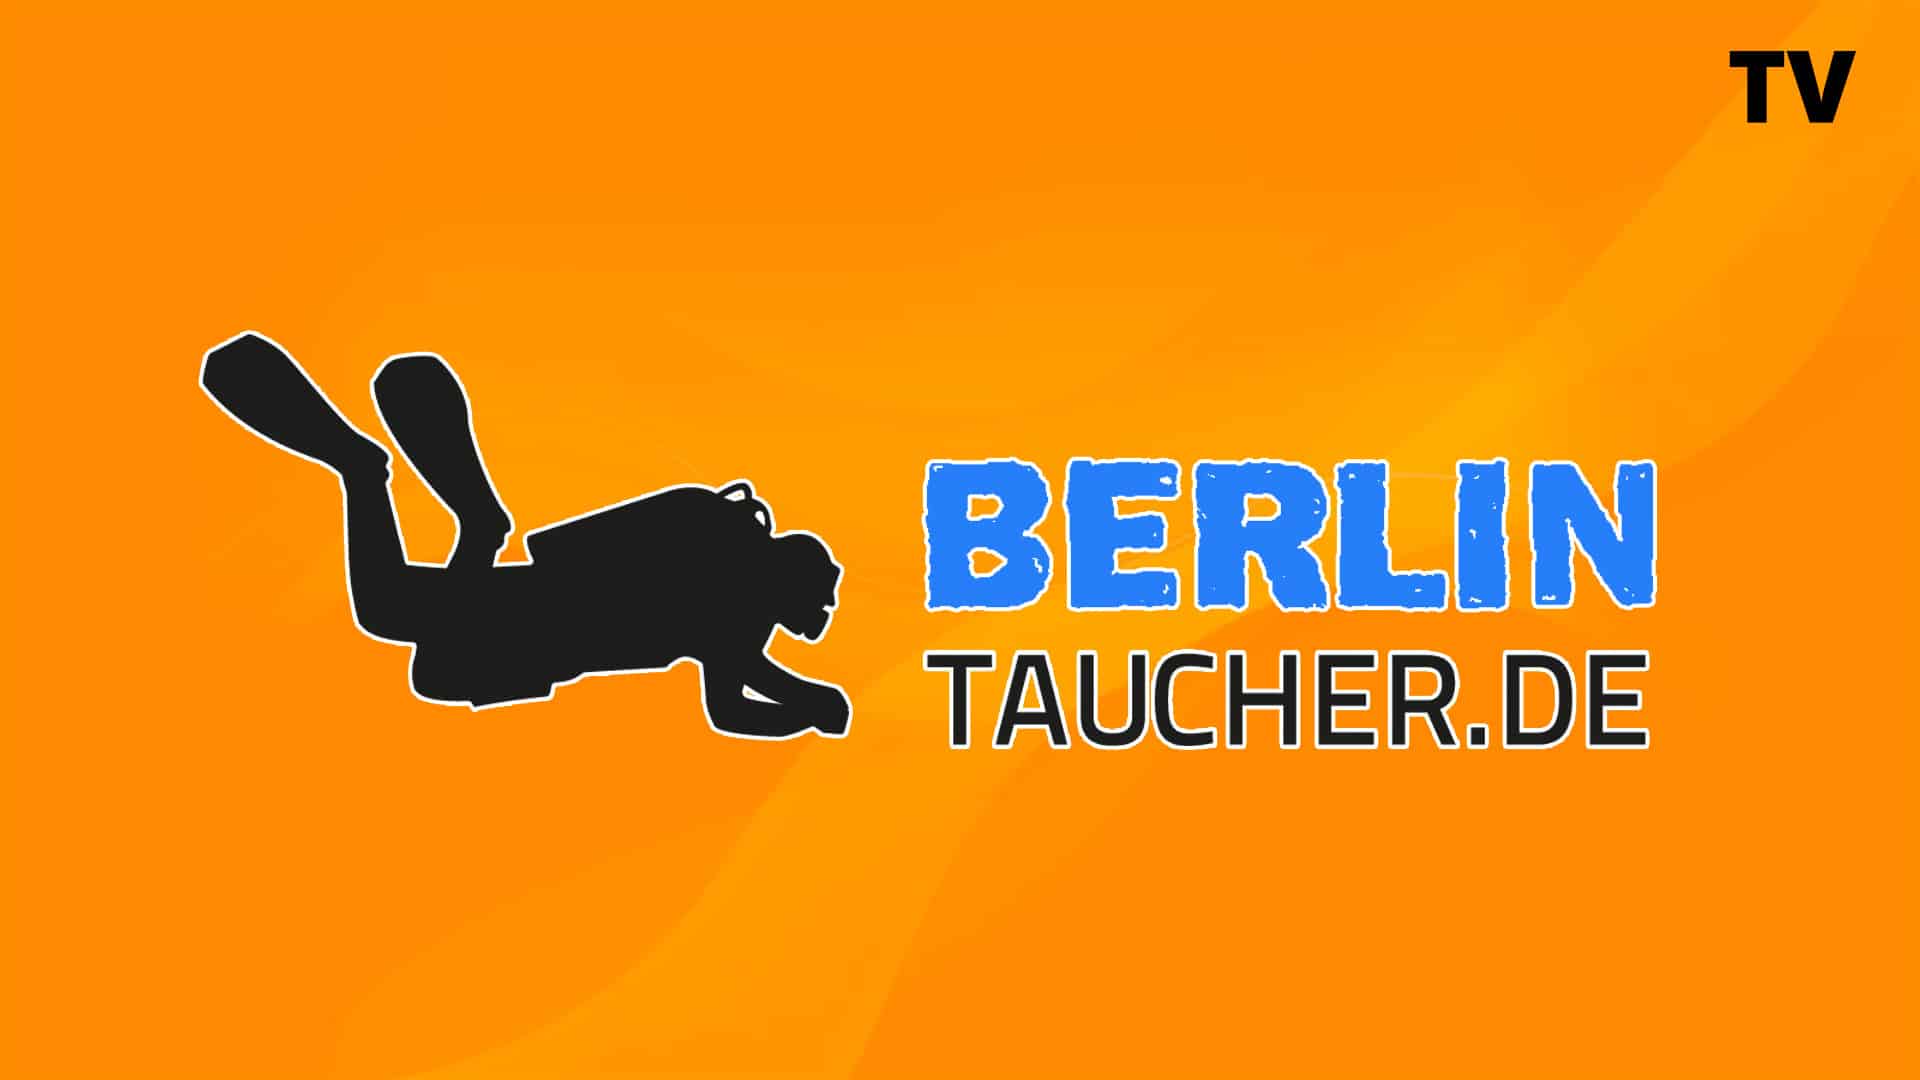 BerlinTaucher.de